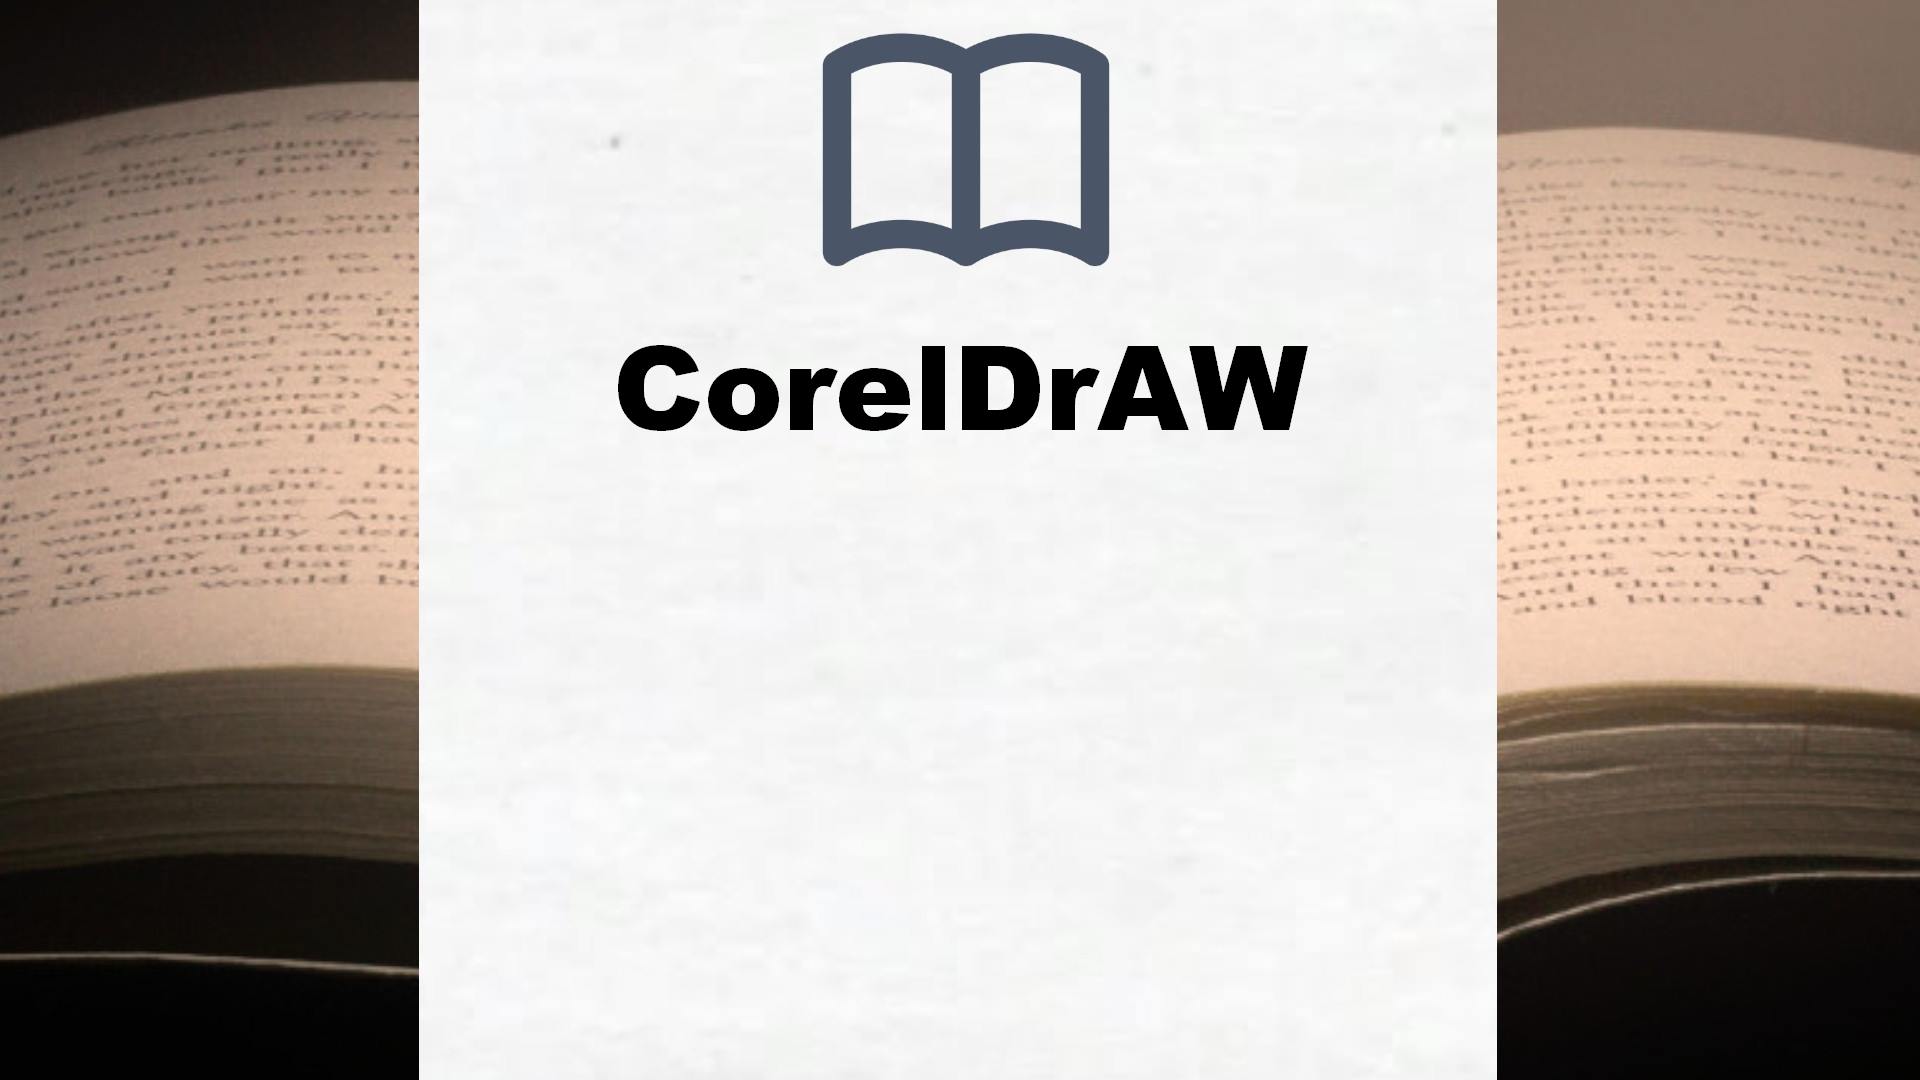 Bücher über CorelDrAW